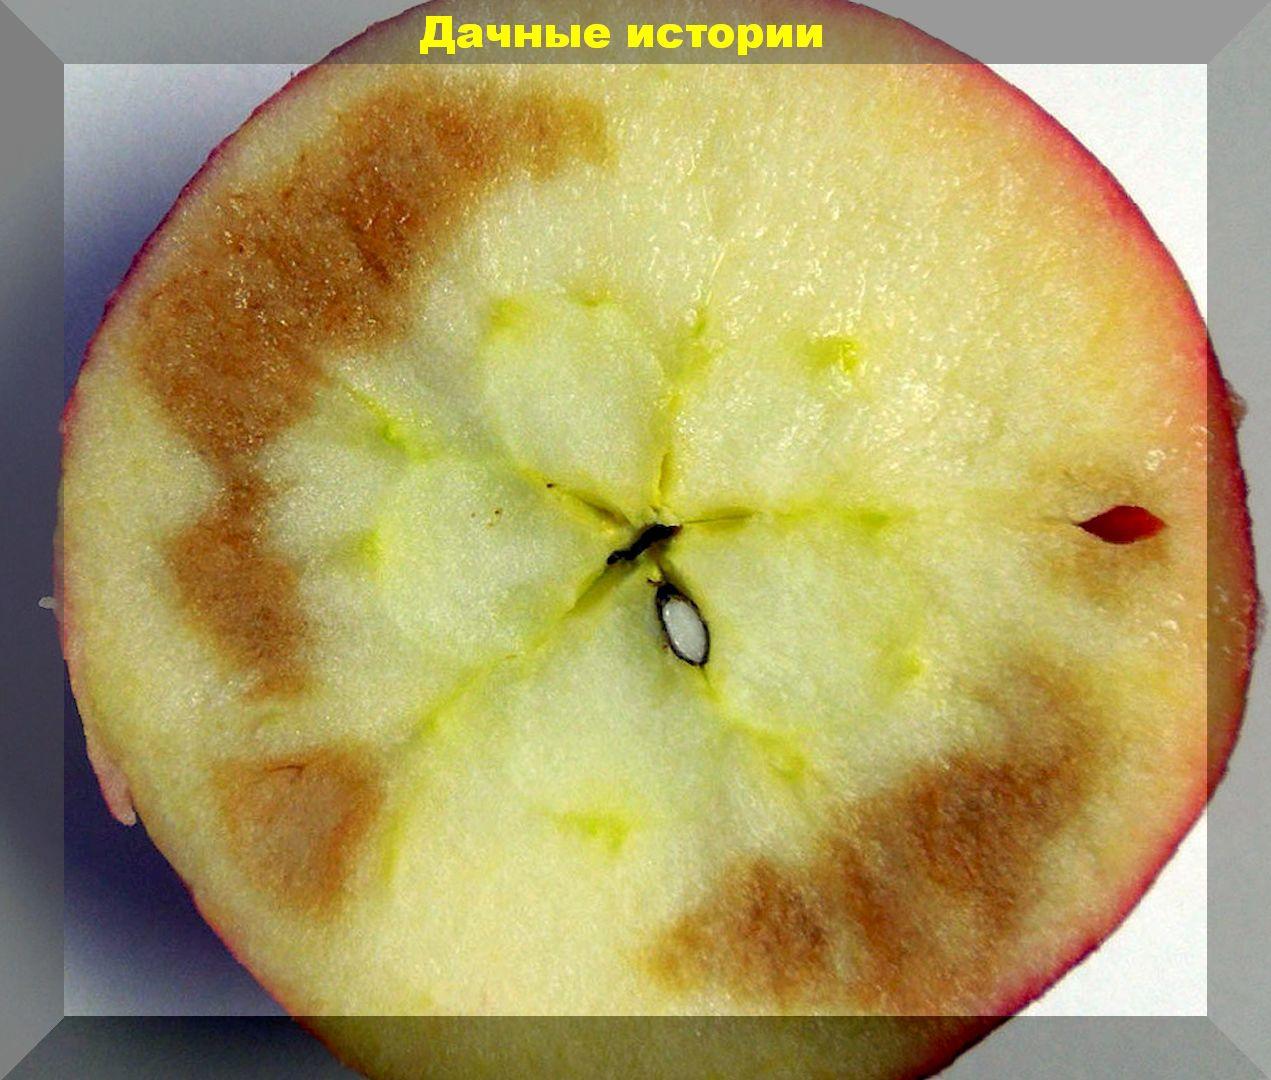 Порча яблок и груш при хранении: опасные и неопасные гнили. Выкинуть или обрезать